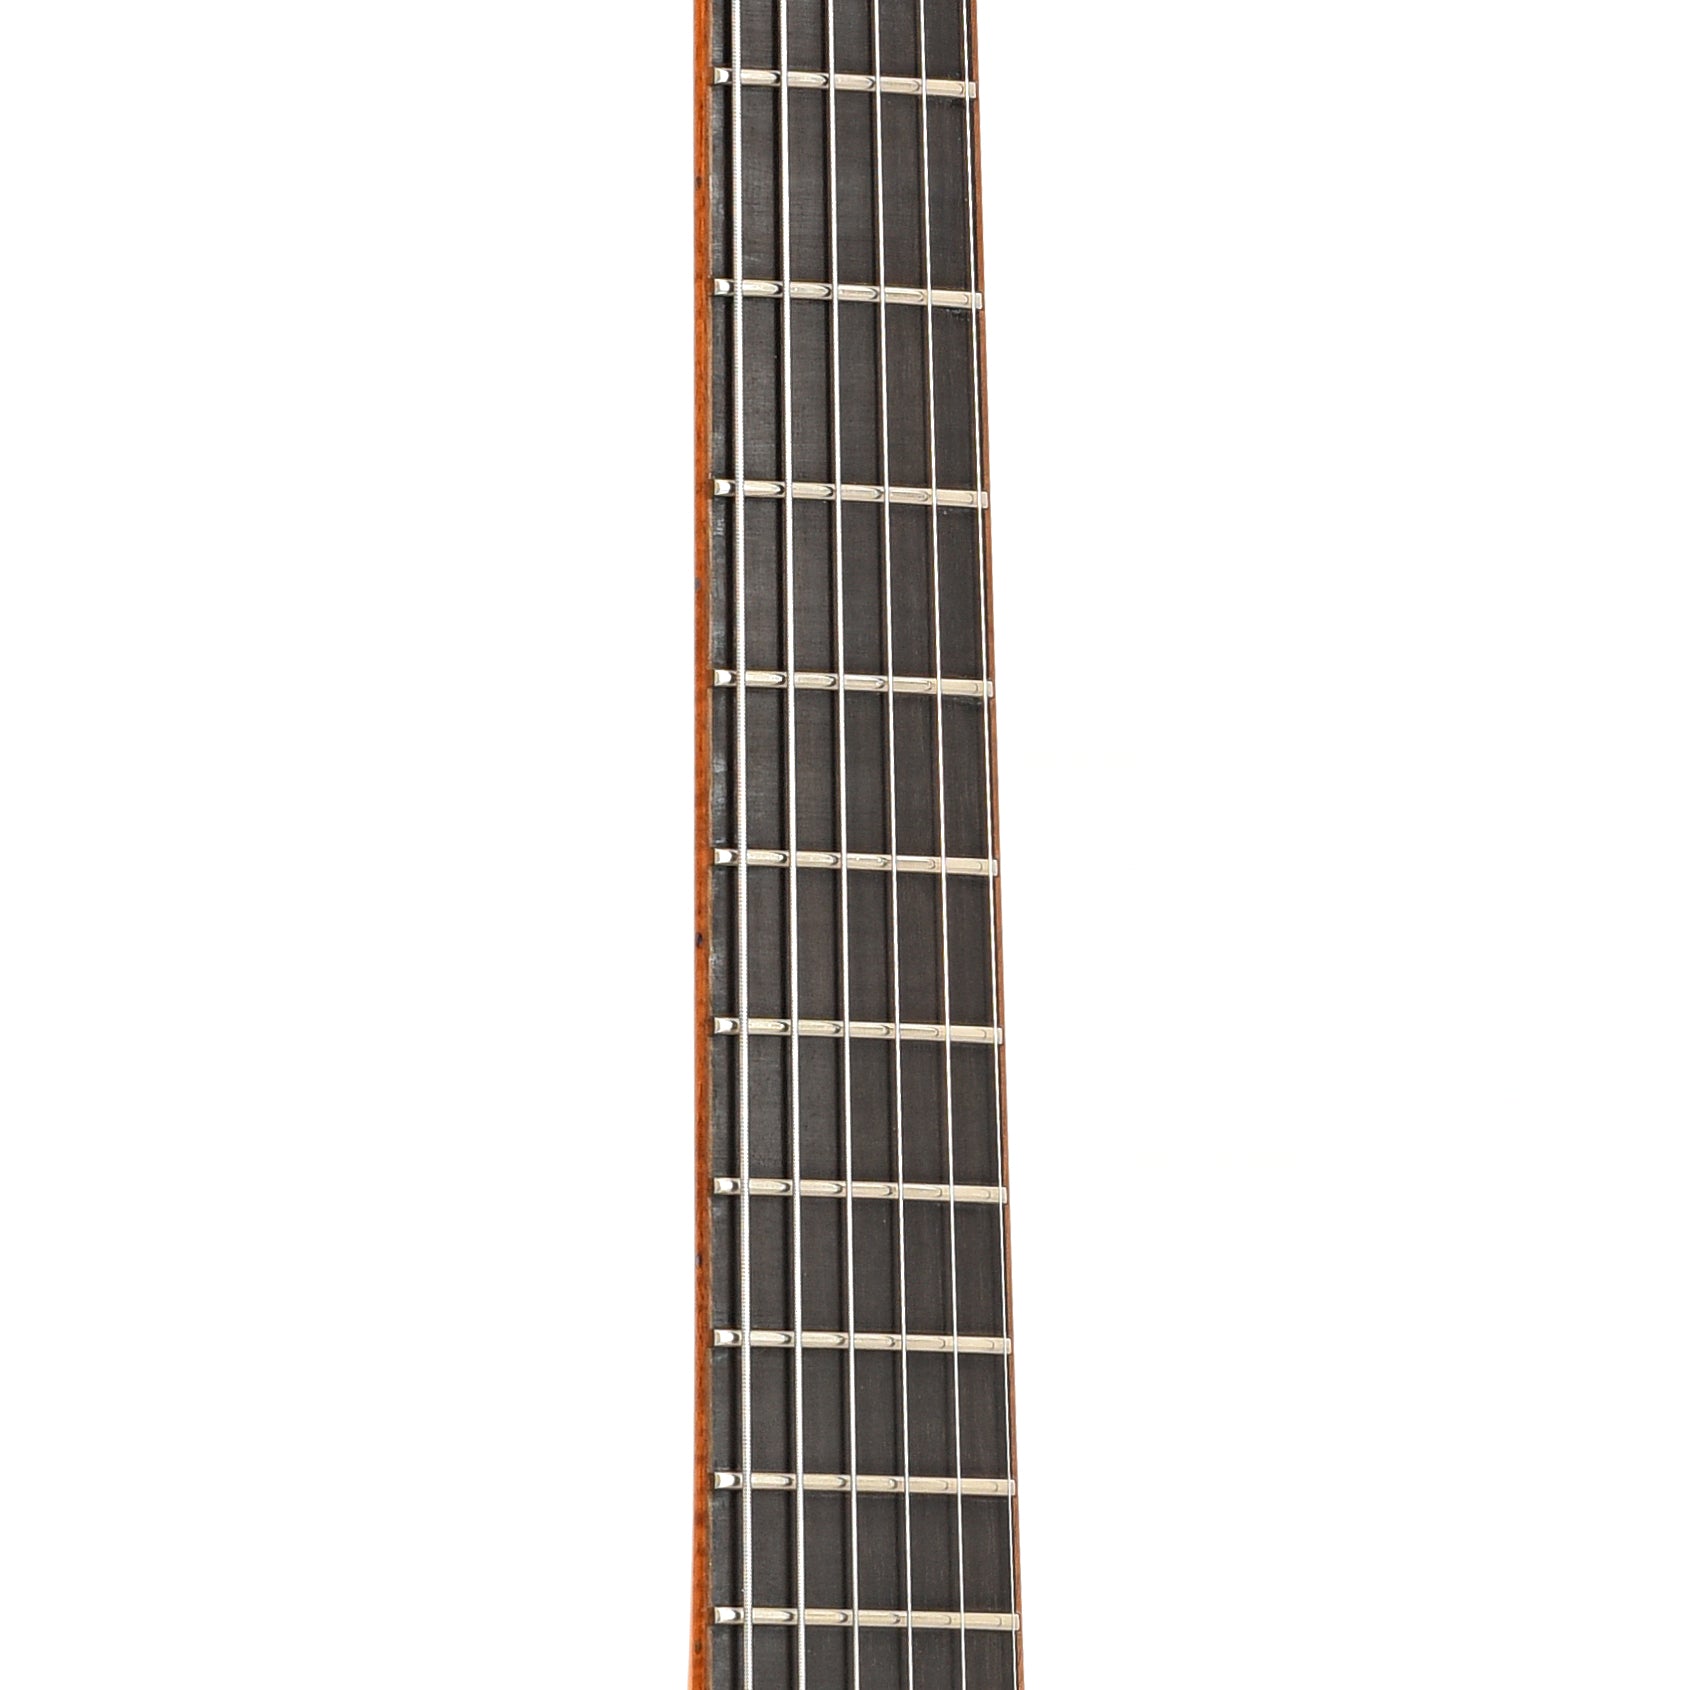 Fretboard of Megas Apollo Archtop Guitar